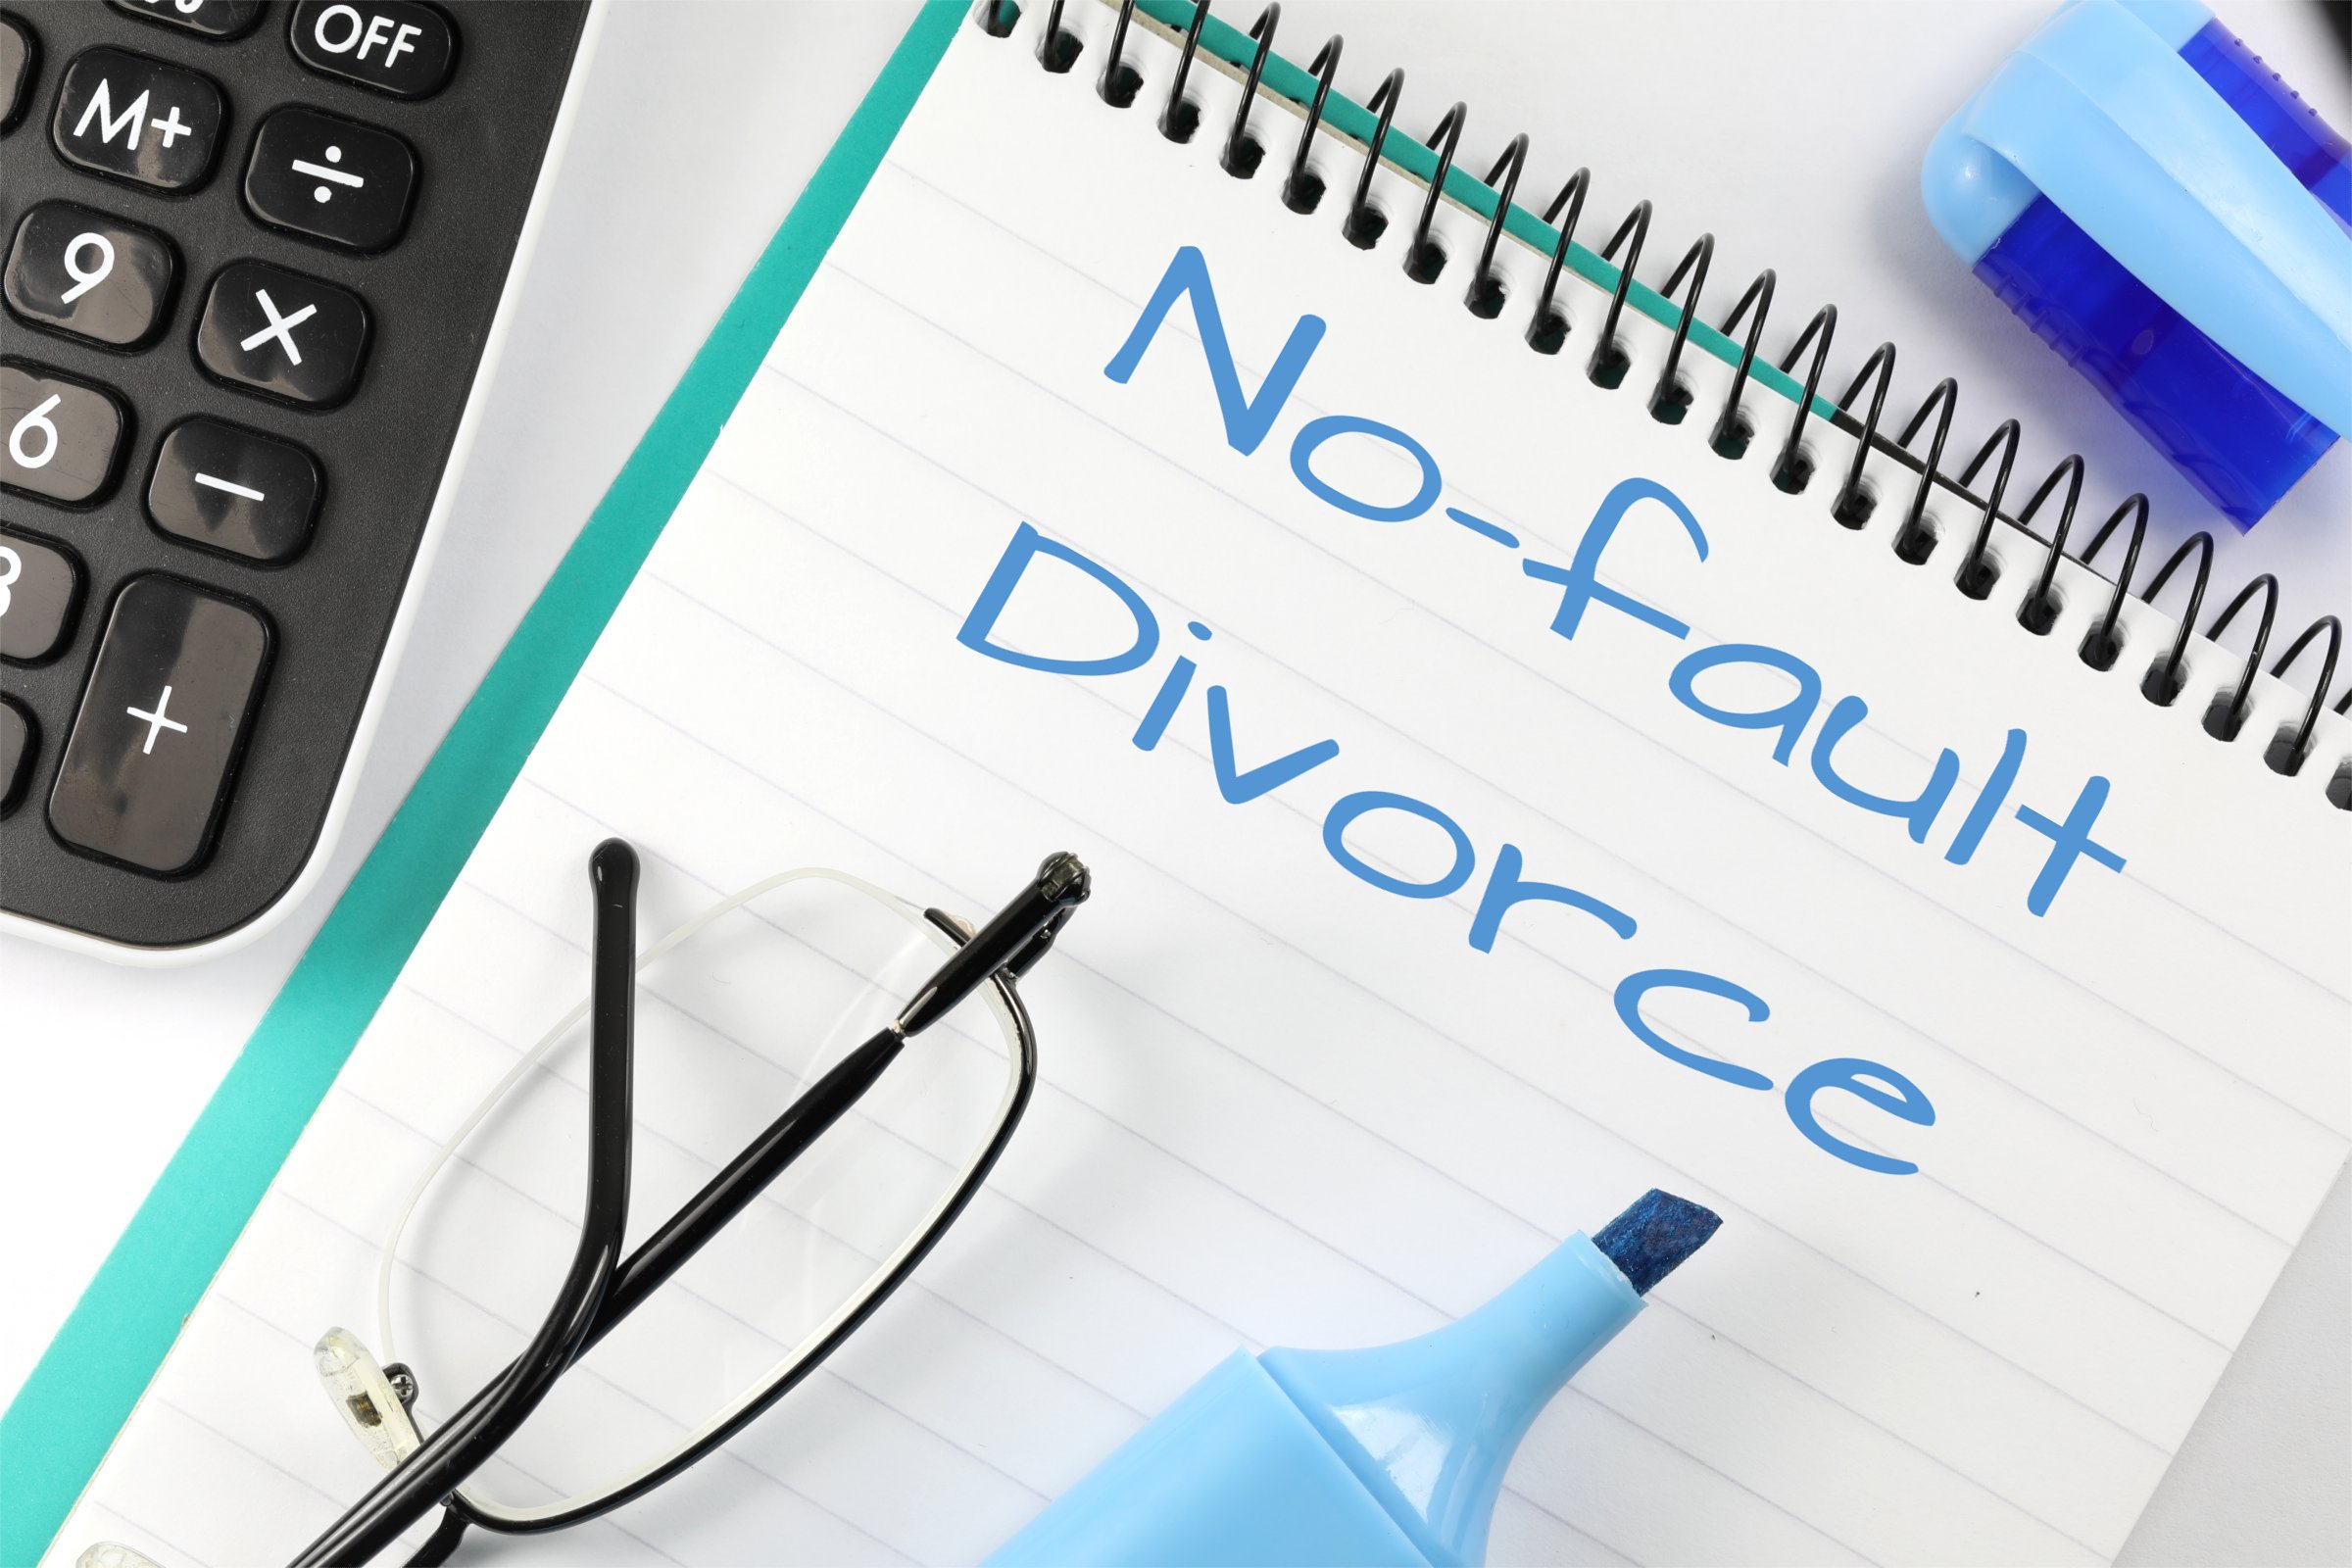 no fault divorce